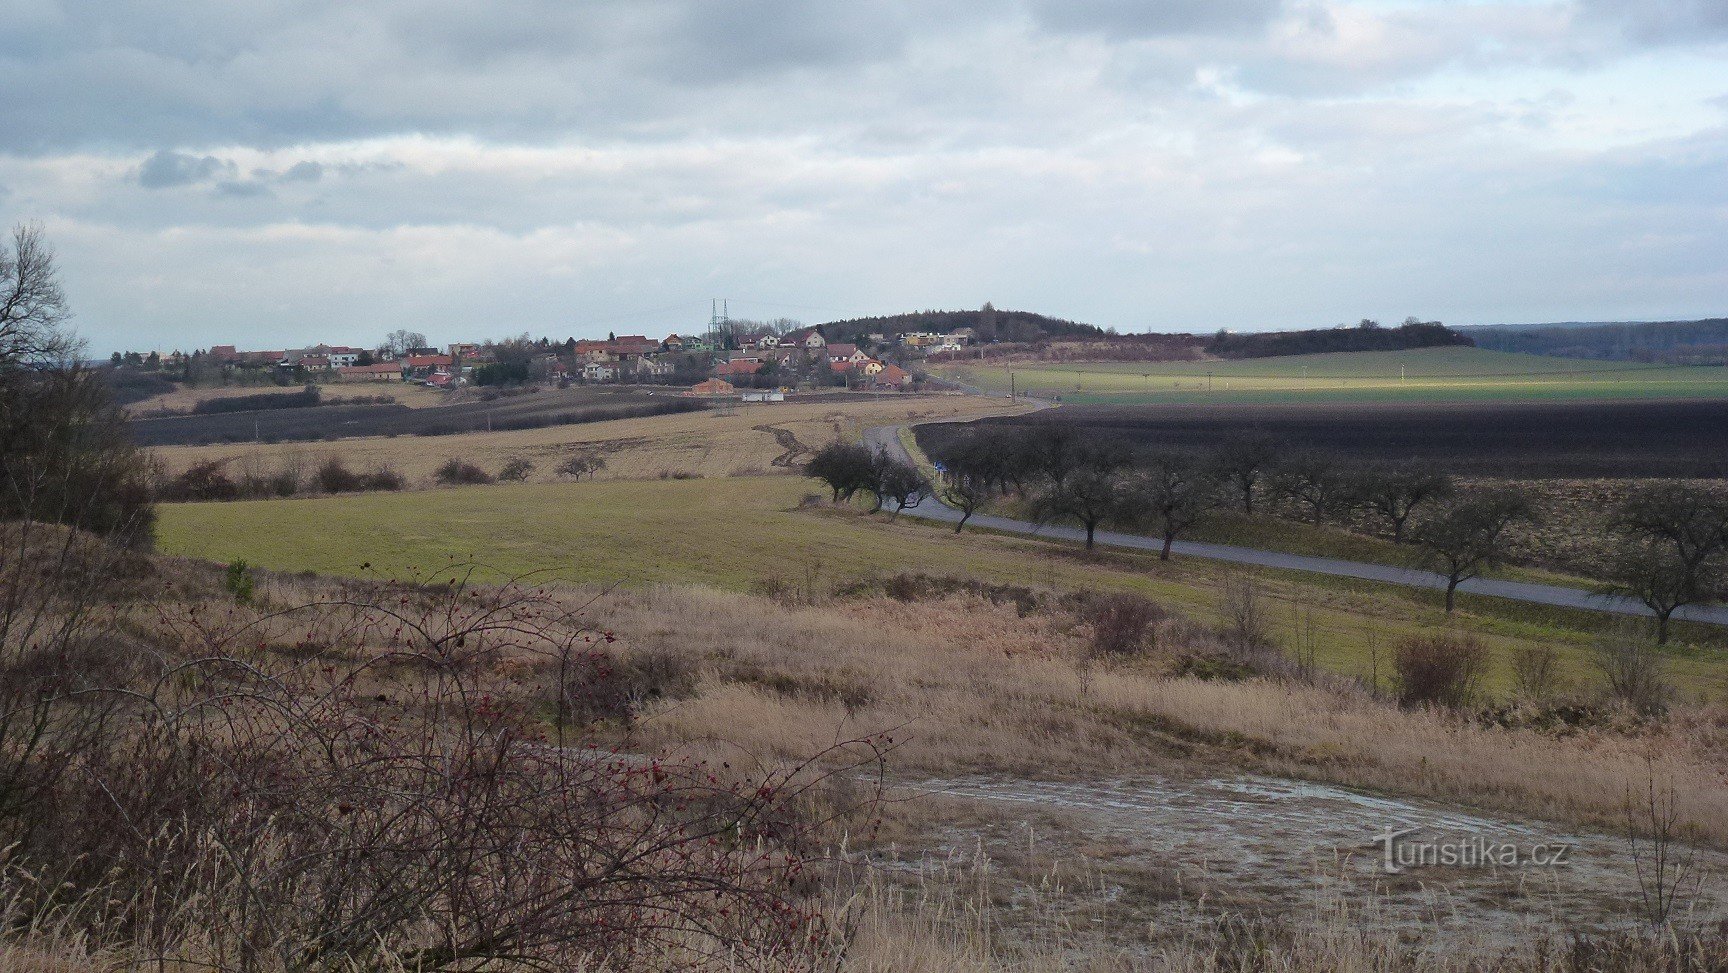 Mokošín - nhìn ra ngọn đồi và làng Mokošín từ jilník gần đó ở Tupesy